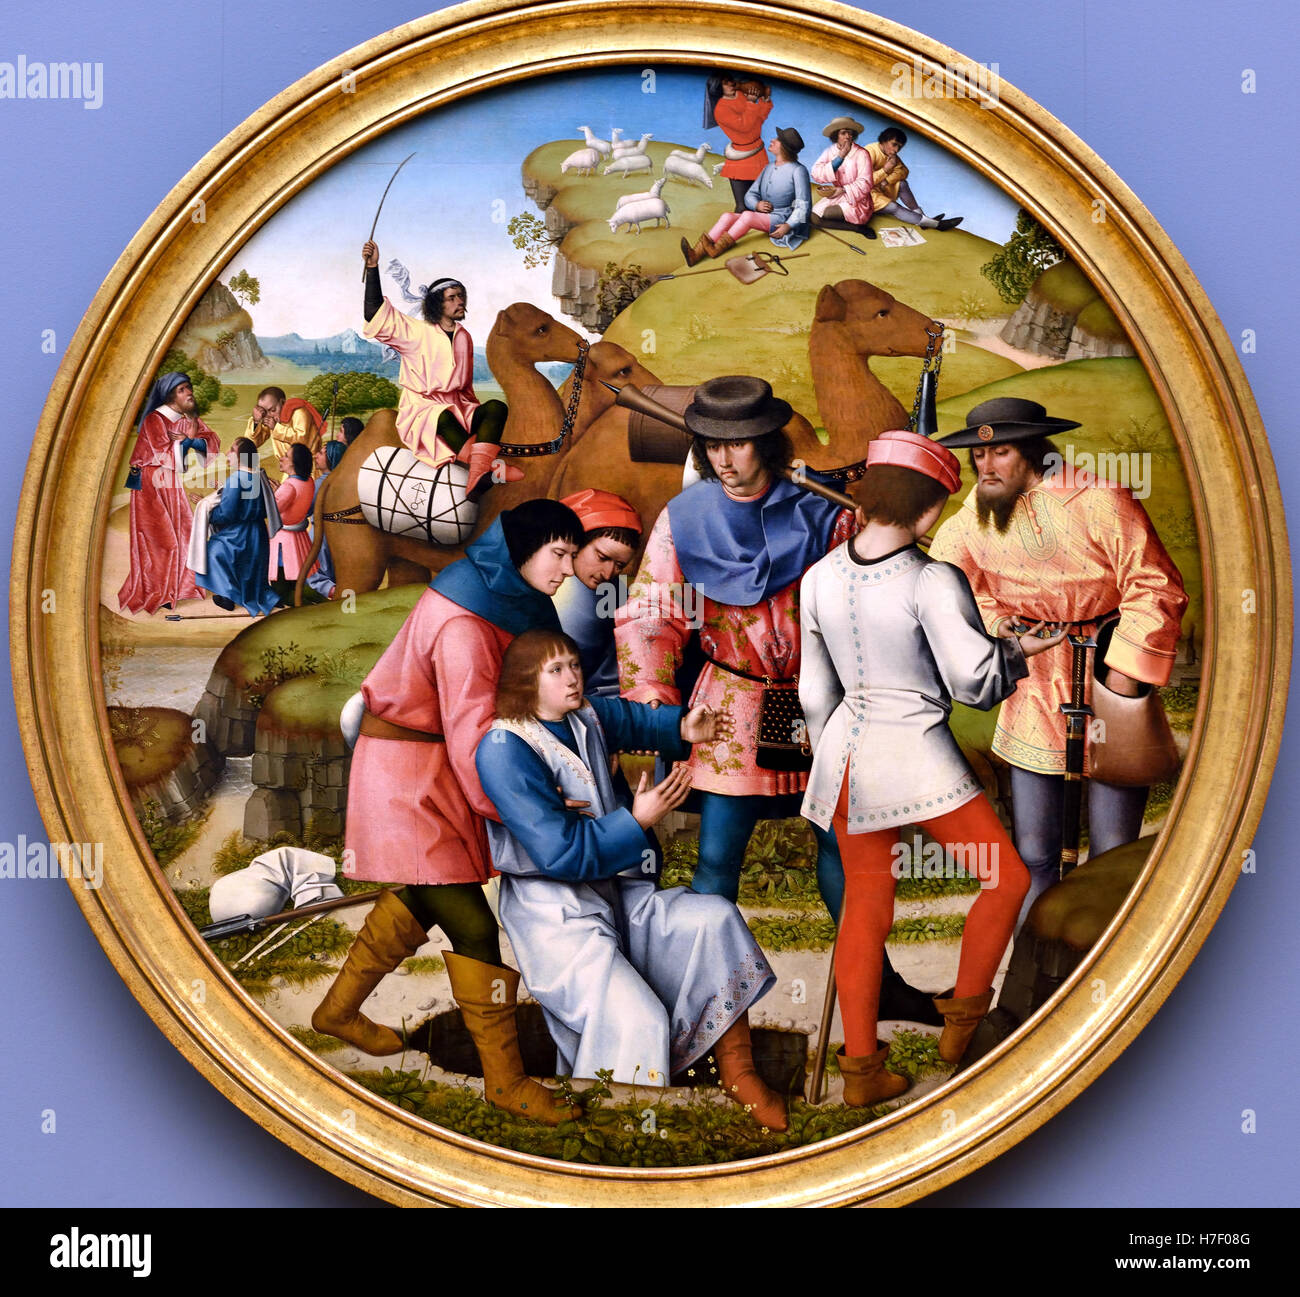 Der Meister der Affligem oder Meister Joseph Sequenz 1470 – 1500 Süd Niederlande Schule belgischen Brüssel Stockfoto